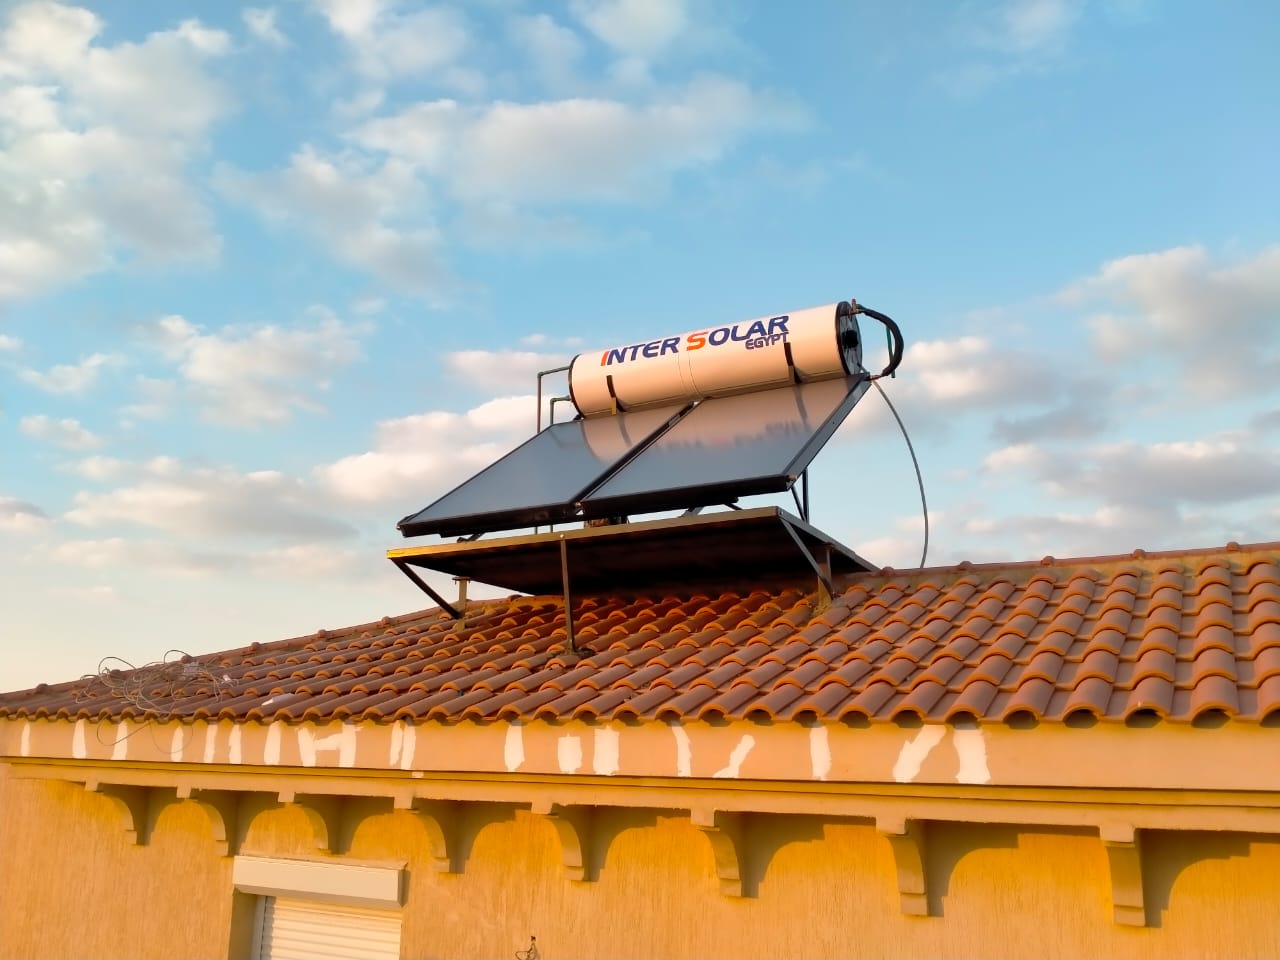 سخانات الطاقة الشمسية سوليمبك من شركة انترسولار ايجيبت